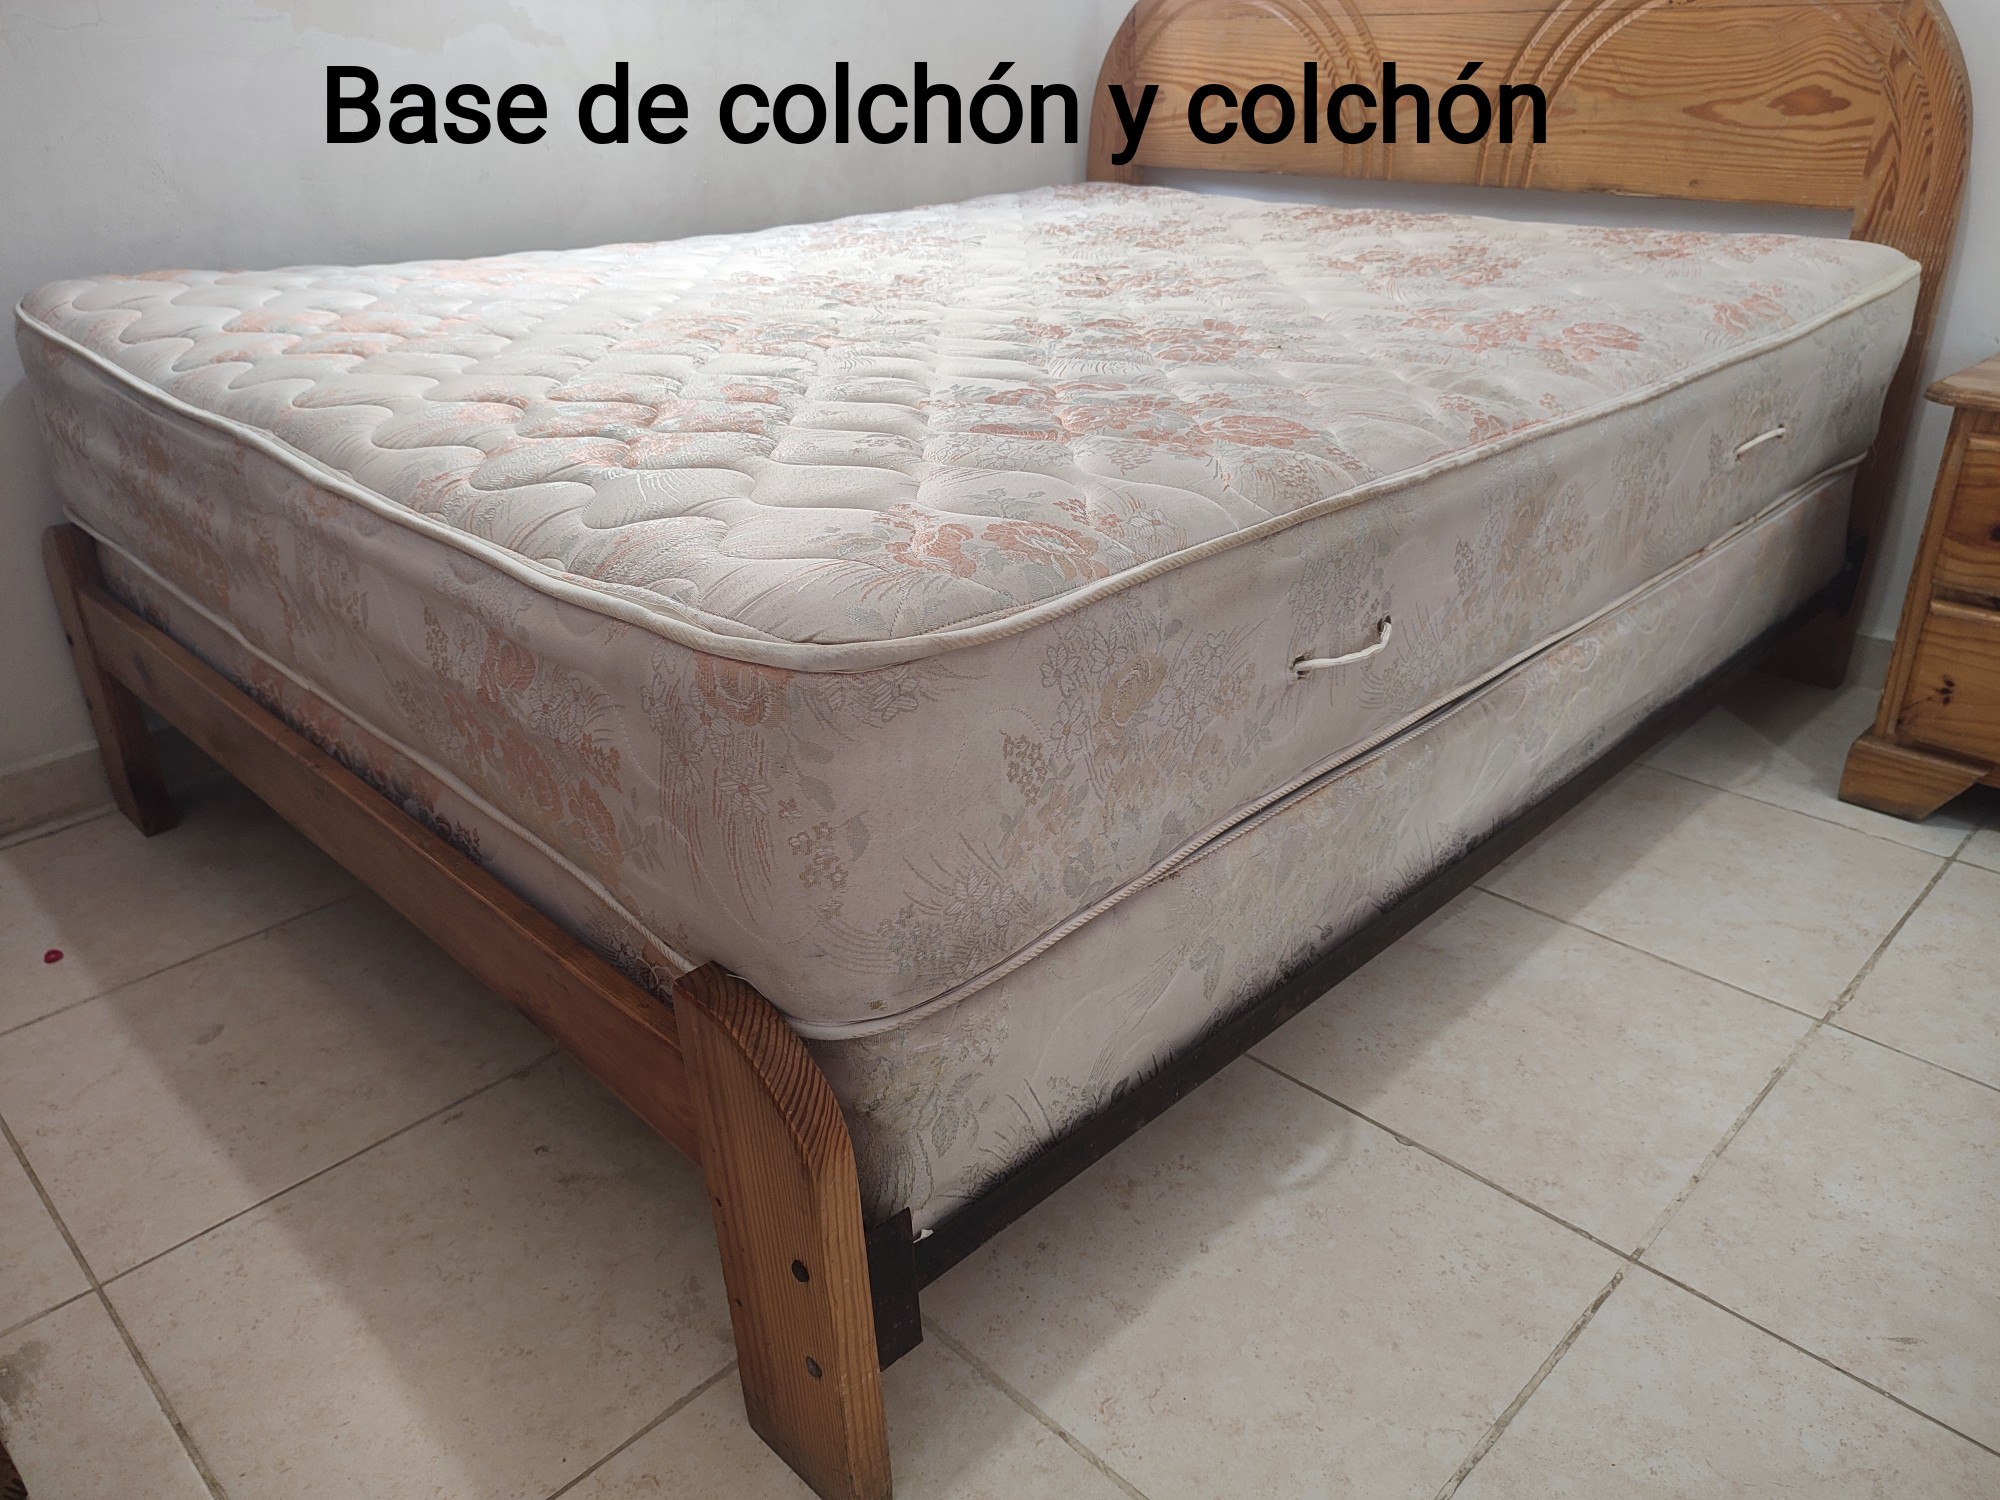 muebles y colchones - Vendo juego de habitación completo, cama Queen con colchón 2